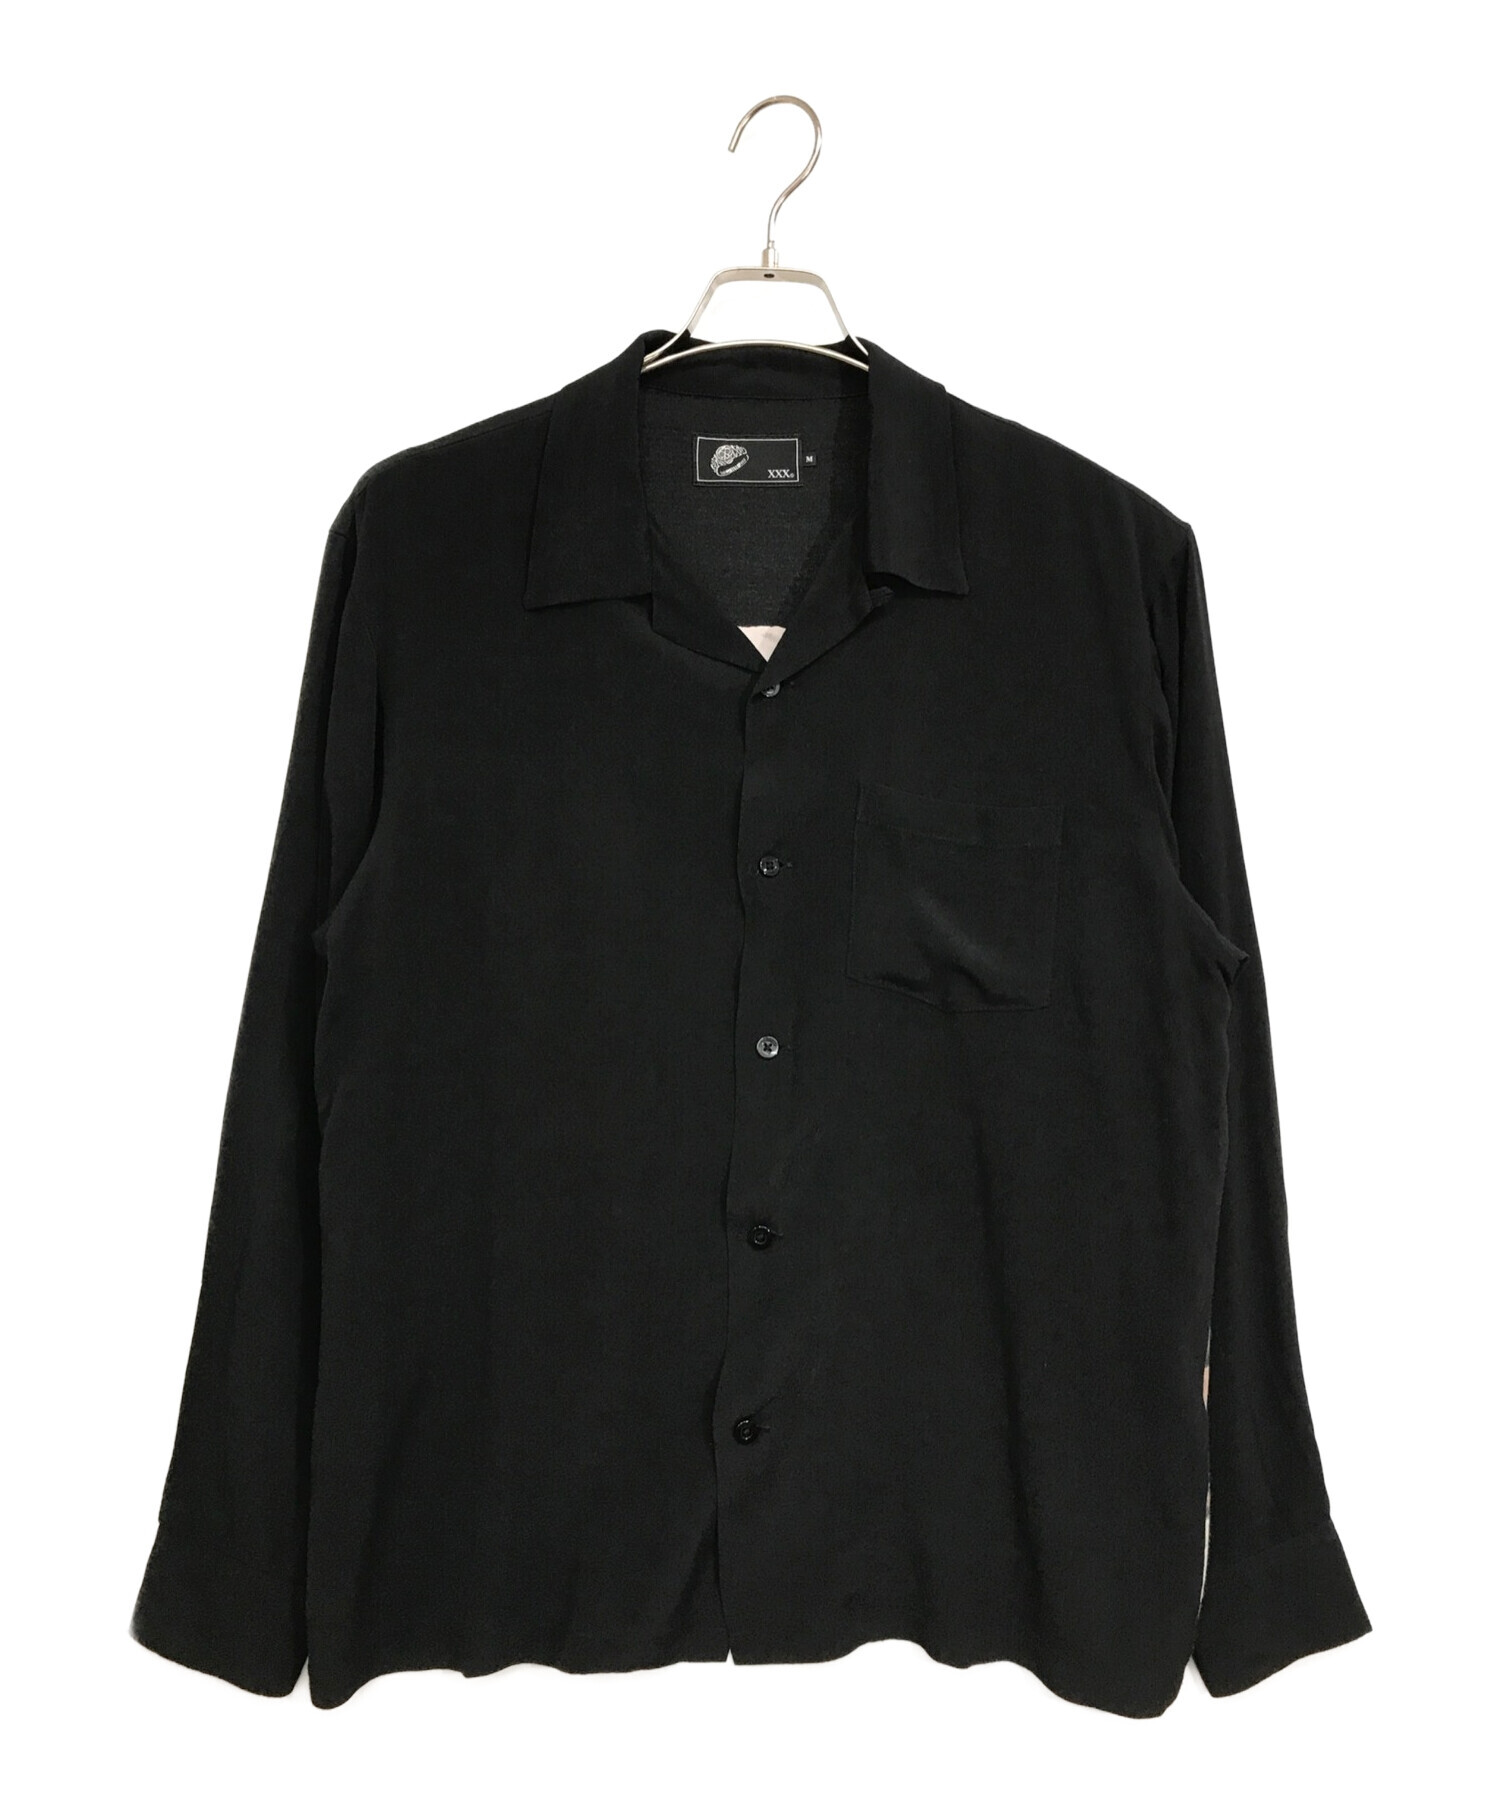 ヒス【SONICYOUTH/UG PATTERN柄】オープンカラーシャツ 黒 M - シャツ